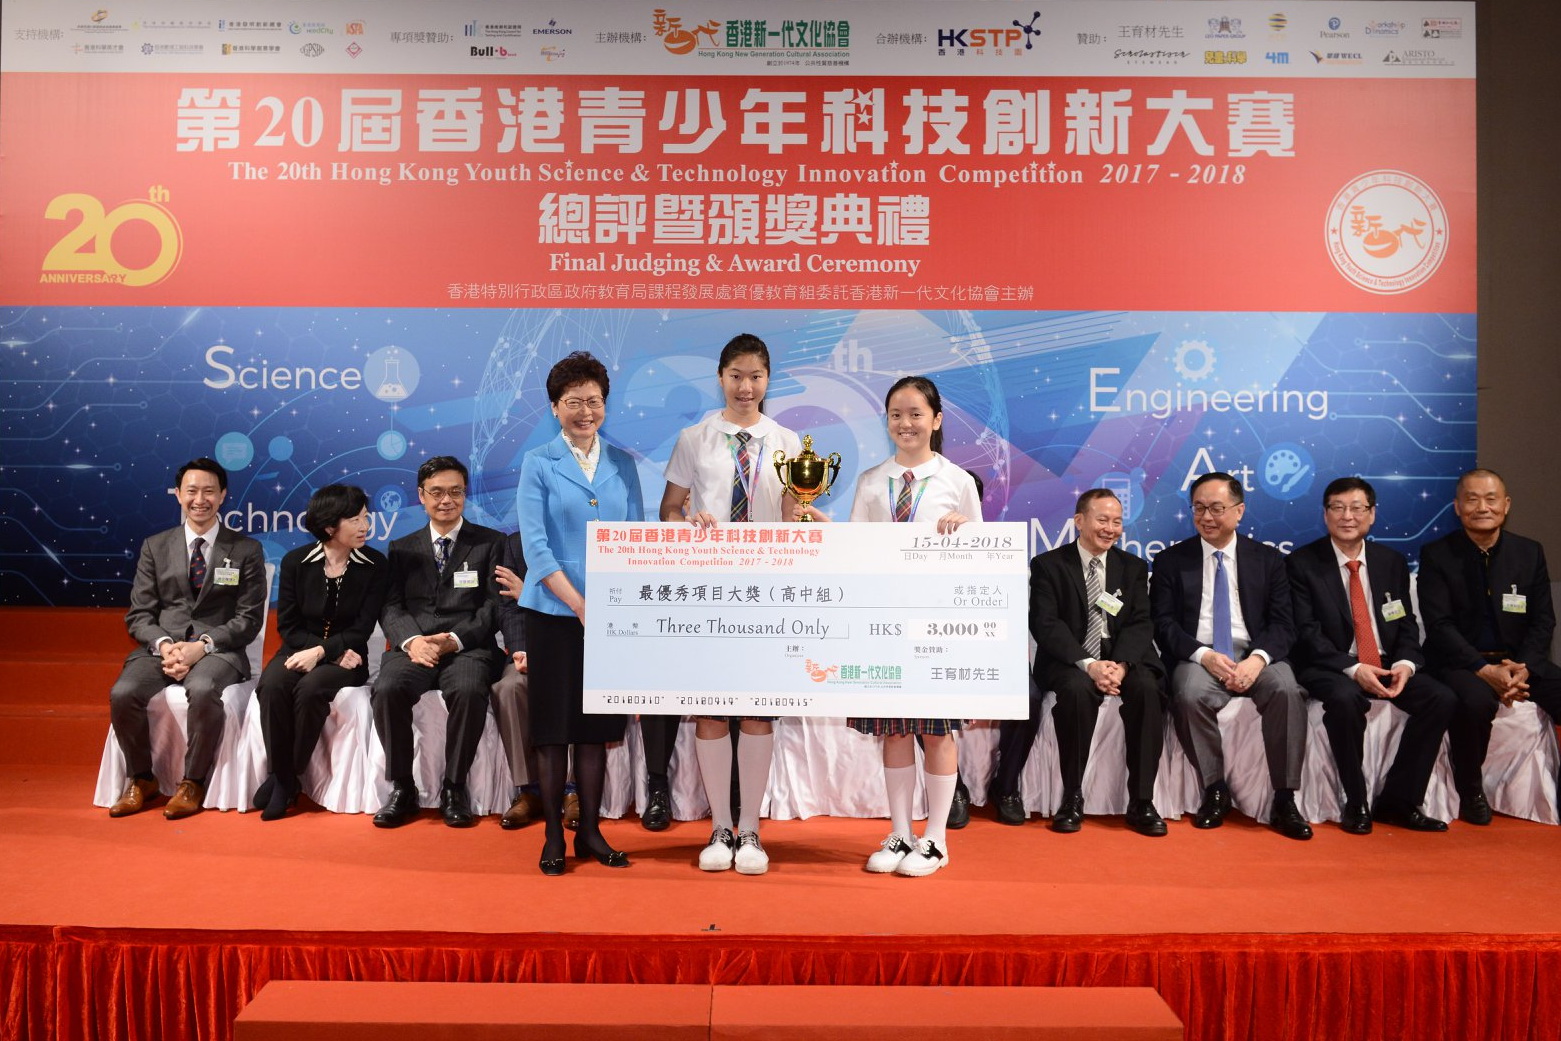 早前陸藝明（中）和姚懿育（右）在香港青少年科技創新大賽獲一等獎及最優秀項目大獎，由特首林鄭月娥頒獎。 （香港新一代文化協會科學創意中心圖片）